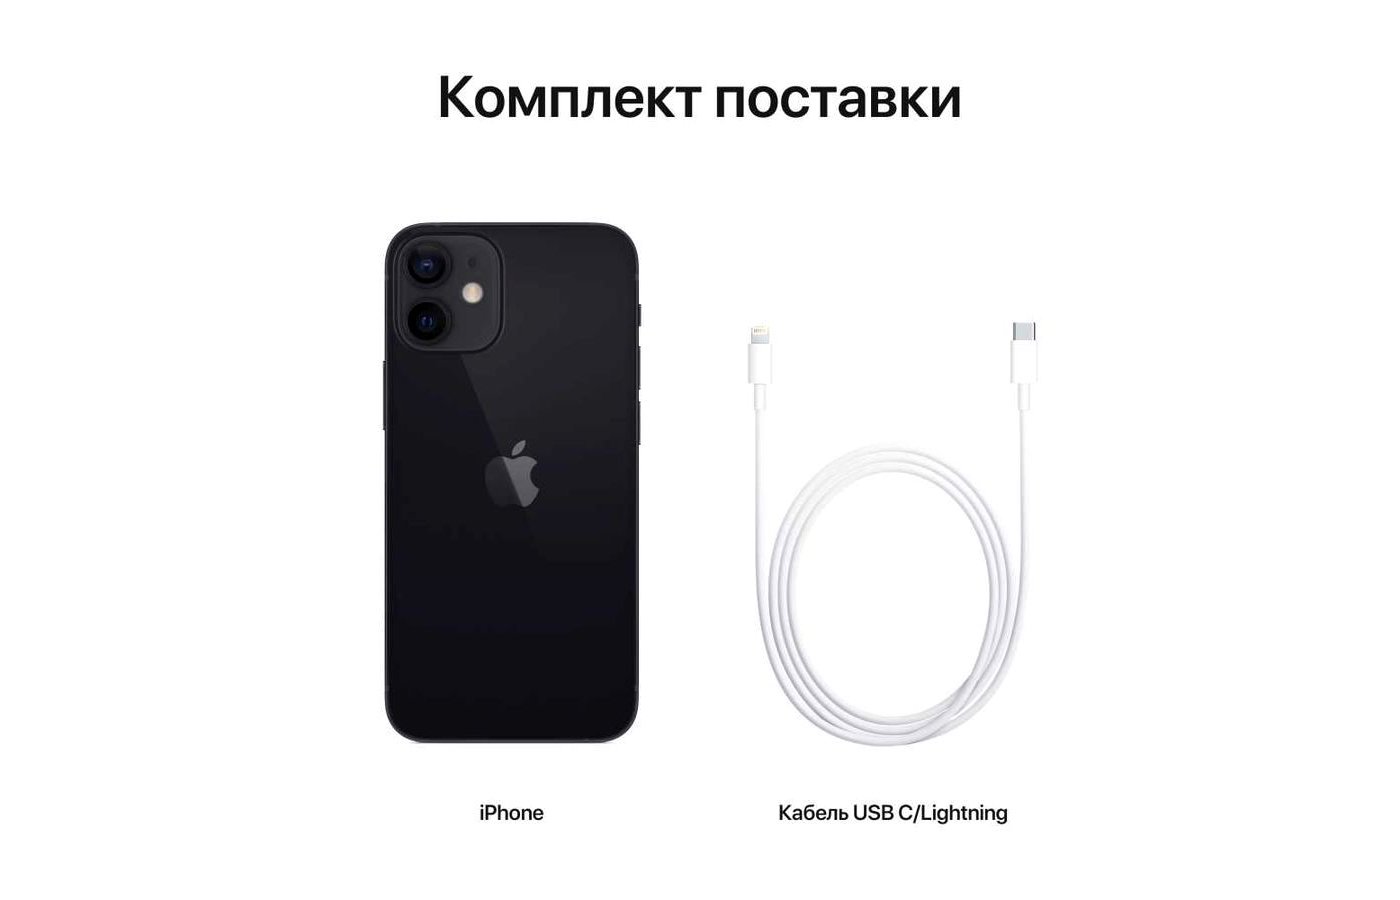 Смартфон Apple iPhone 12 mini 64GB black MGDX3RU/A - купить в  интернет-магазине RBT.ru. Цены, отзывы, характеристики и доставка в  Челябинске